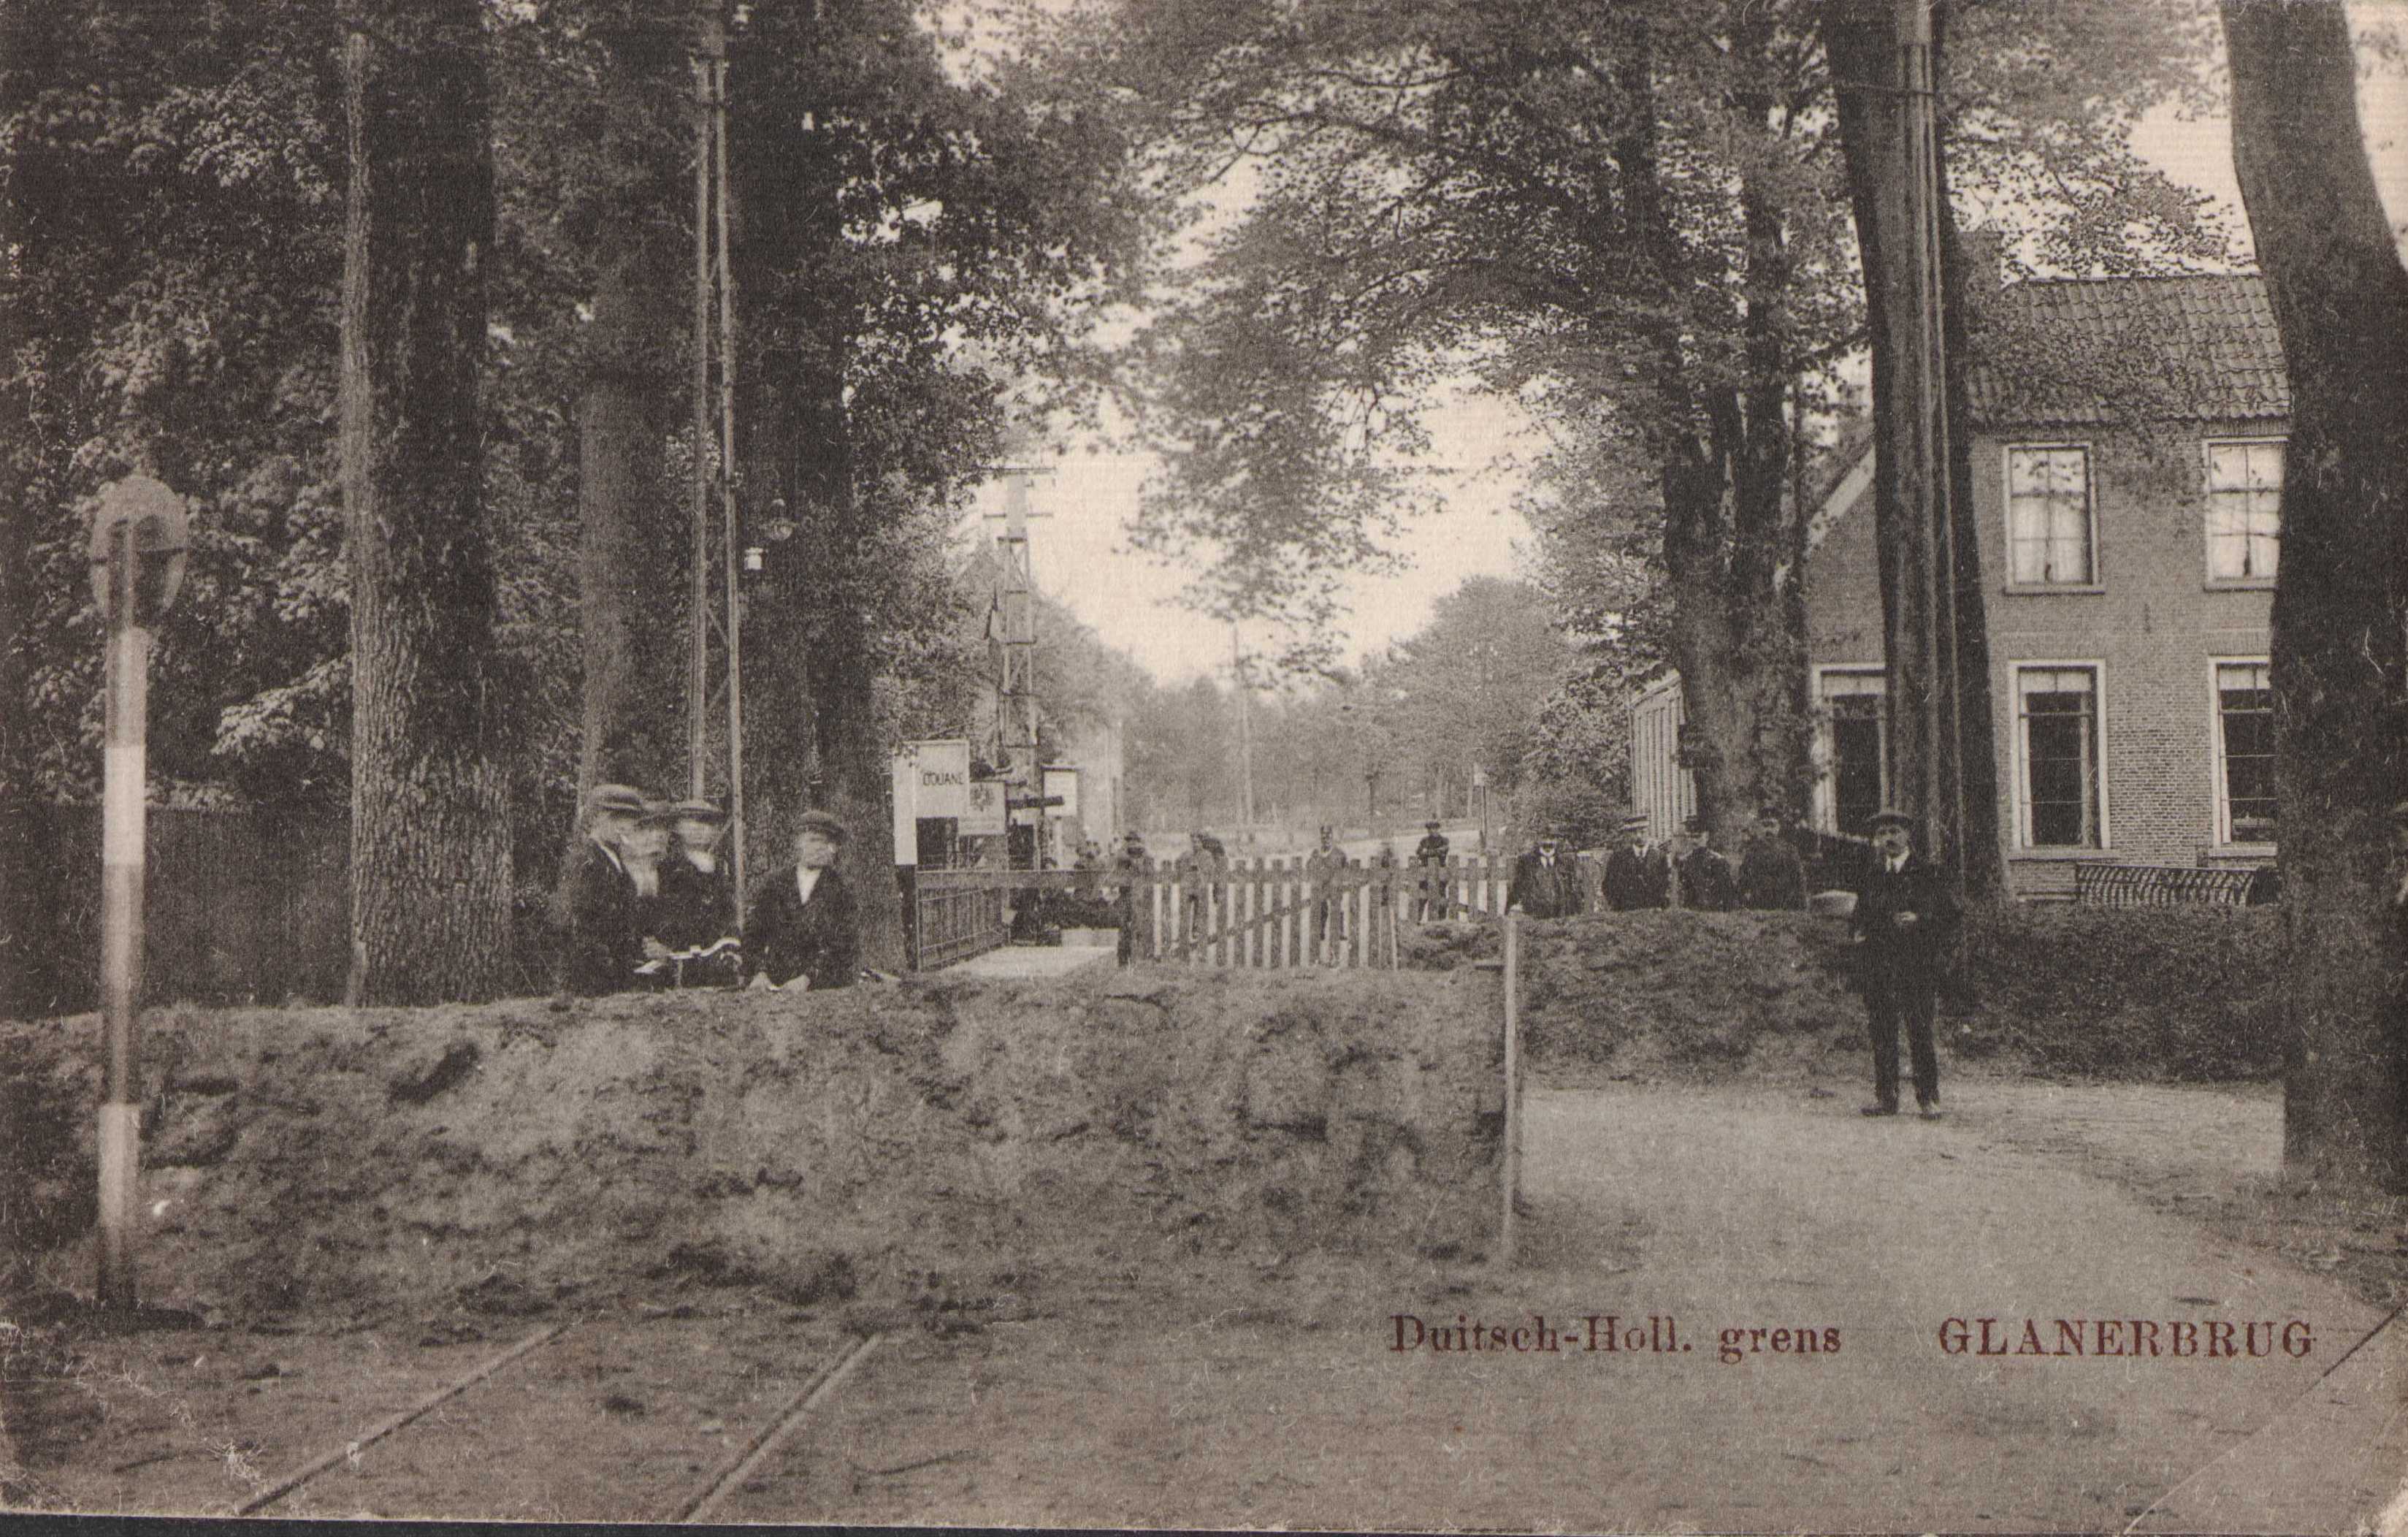 Glanerbrug-grens-1918-76e52a65.jpg